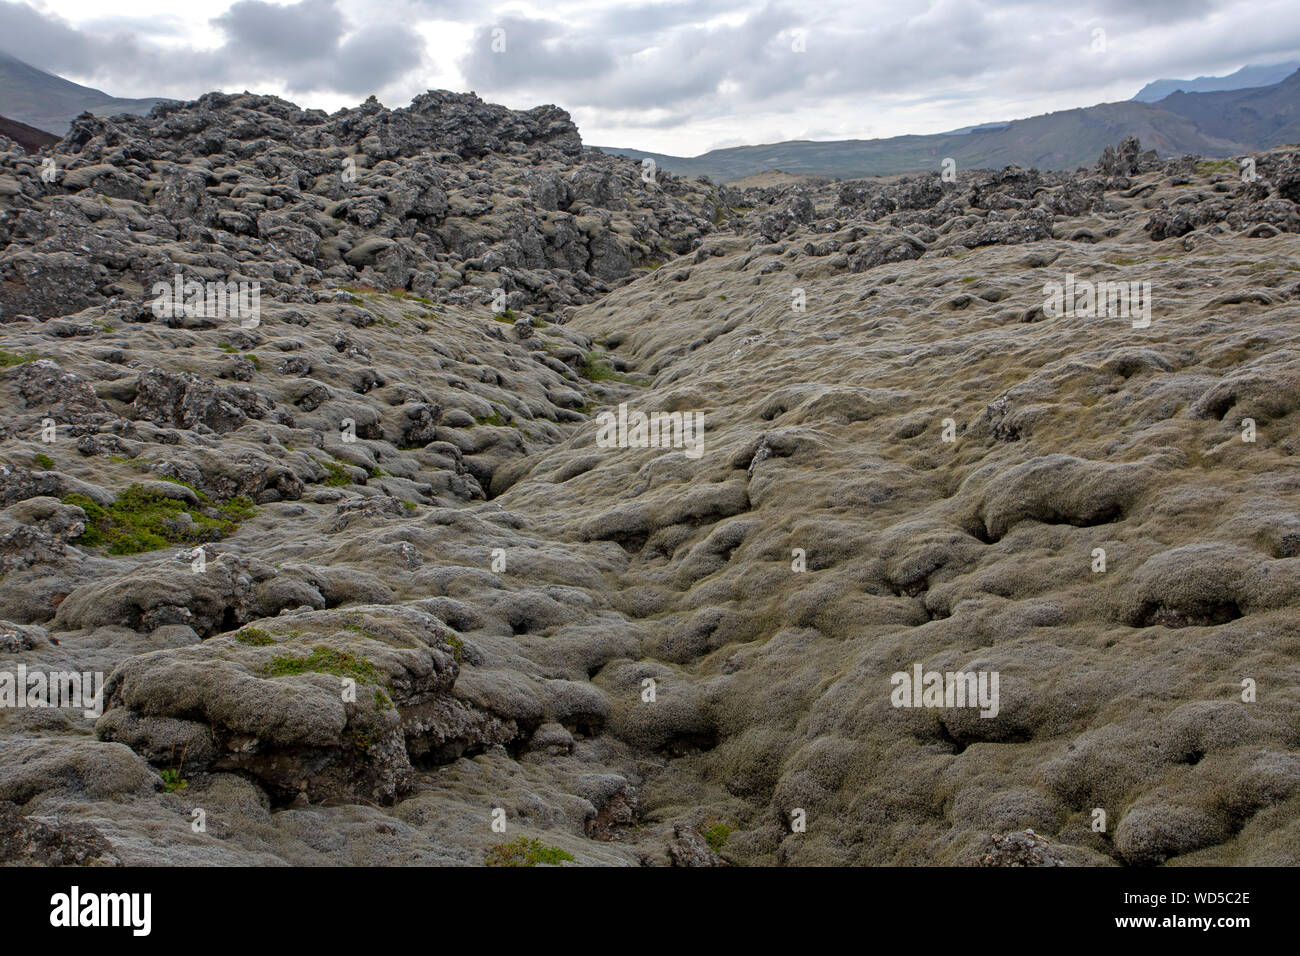 Berserker lava field (Berserkjahraun) on Snaefellsnes Peninsula Stock Photo